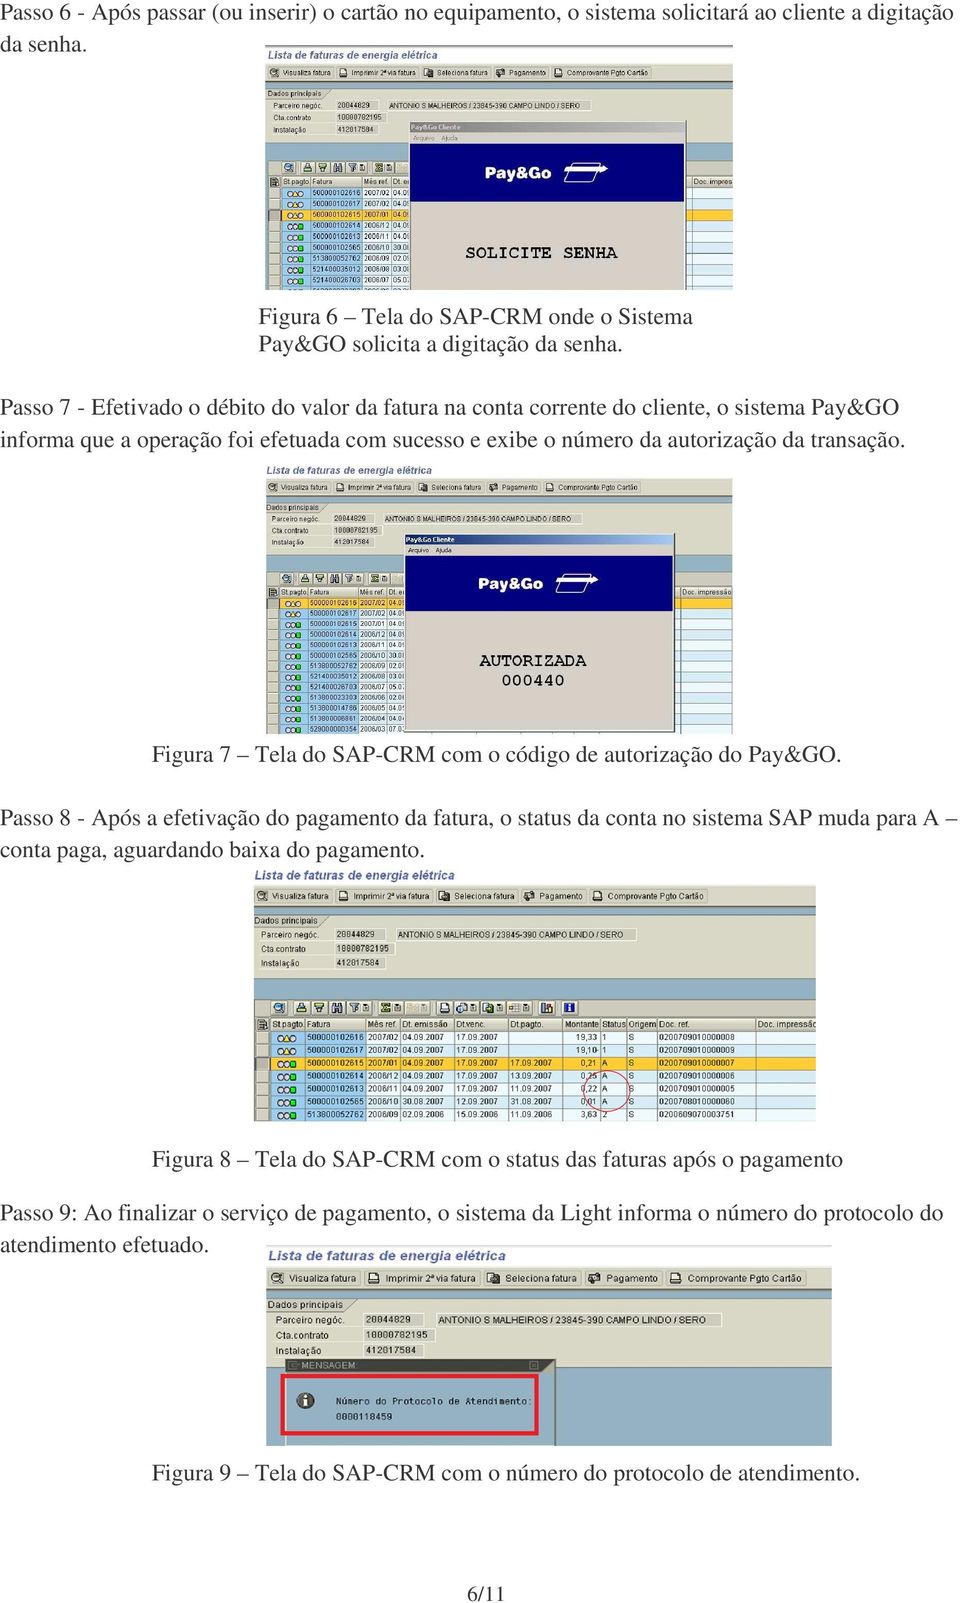 Figura 7 Tela do SAP-CRM com o código de autorização do Pay&GO.